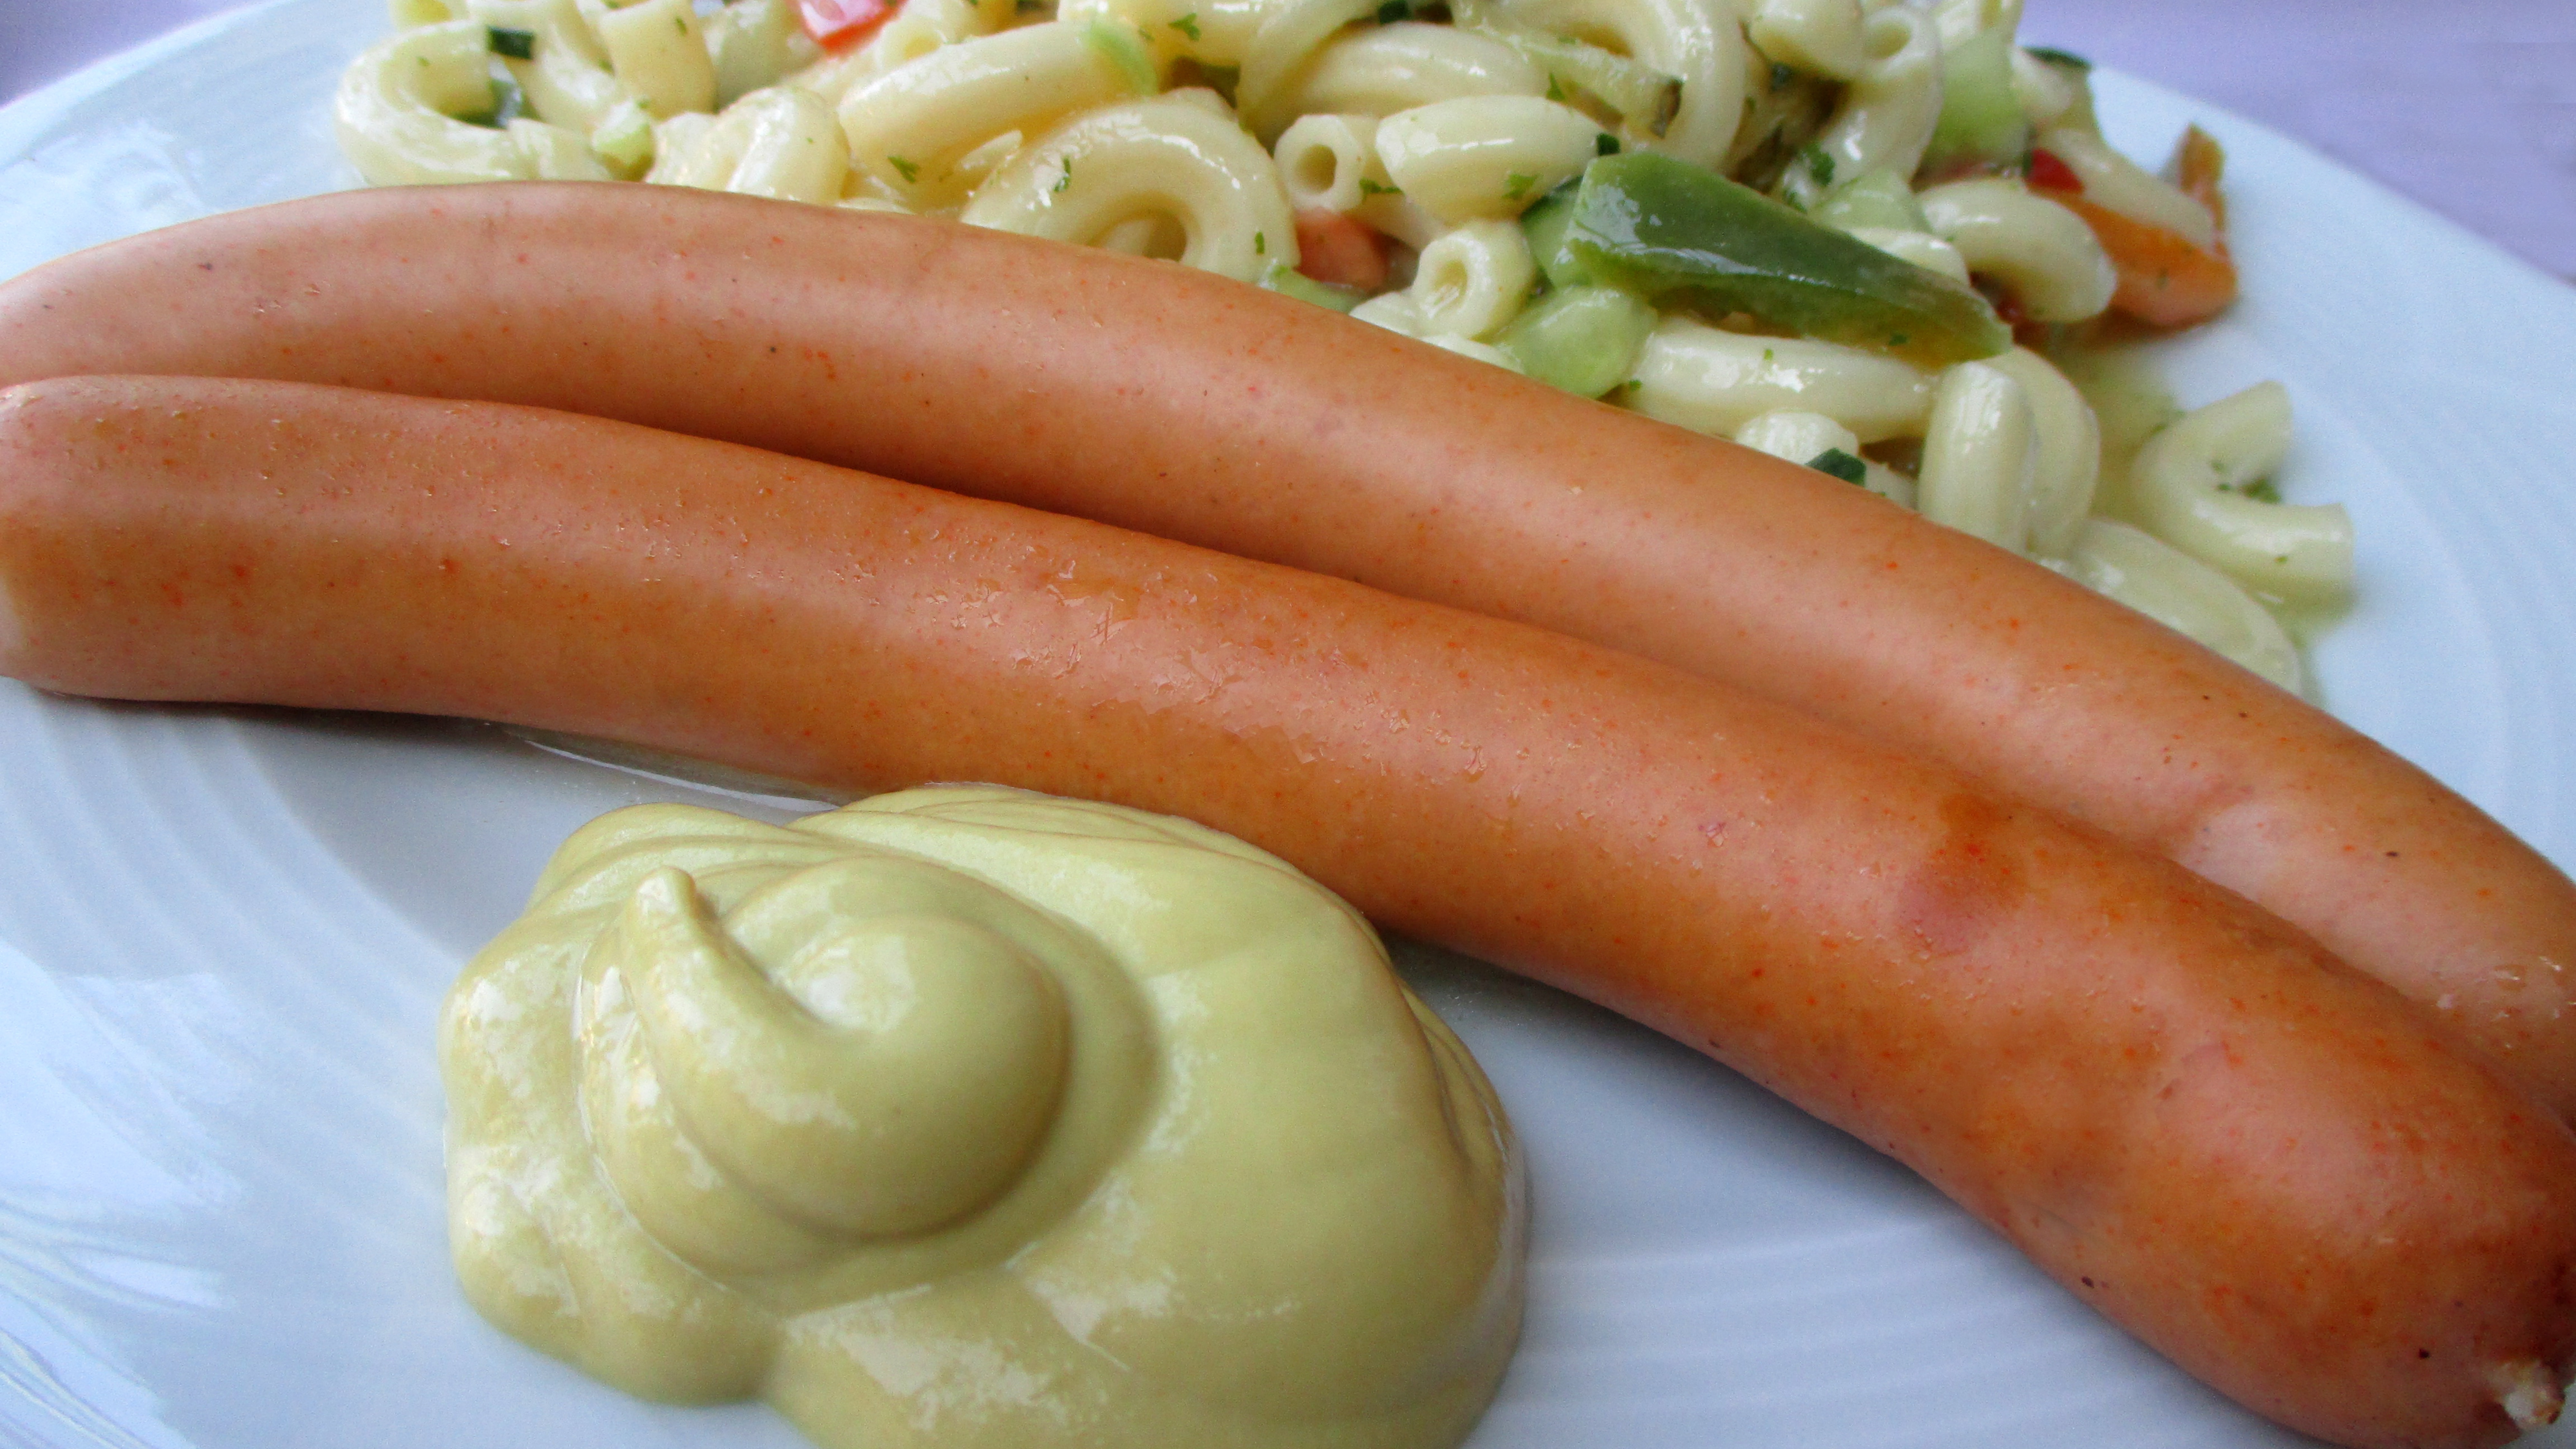 Wiener Würstchen mit Senf und Nudelsalat - Bild 001, Lupus in Saxonia, CC BY-SA 4.0